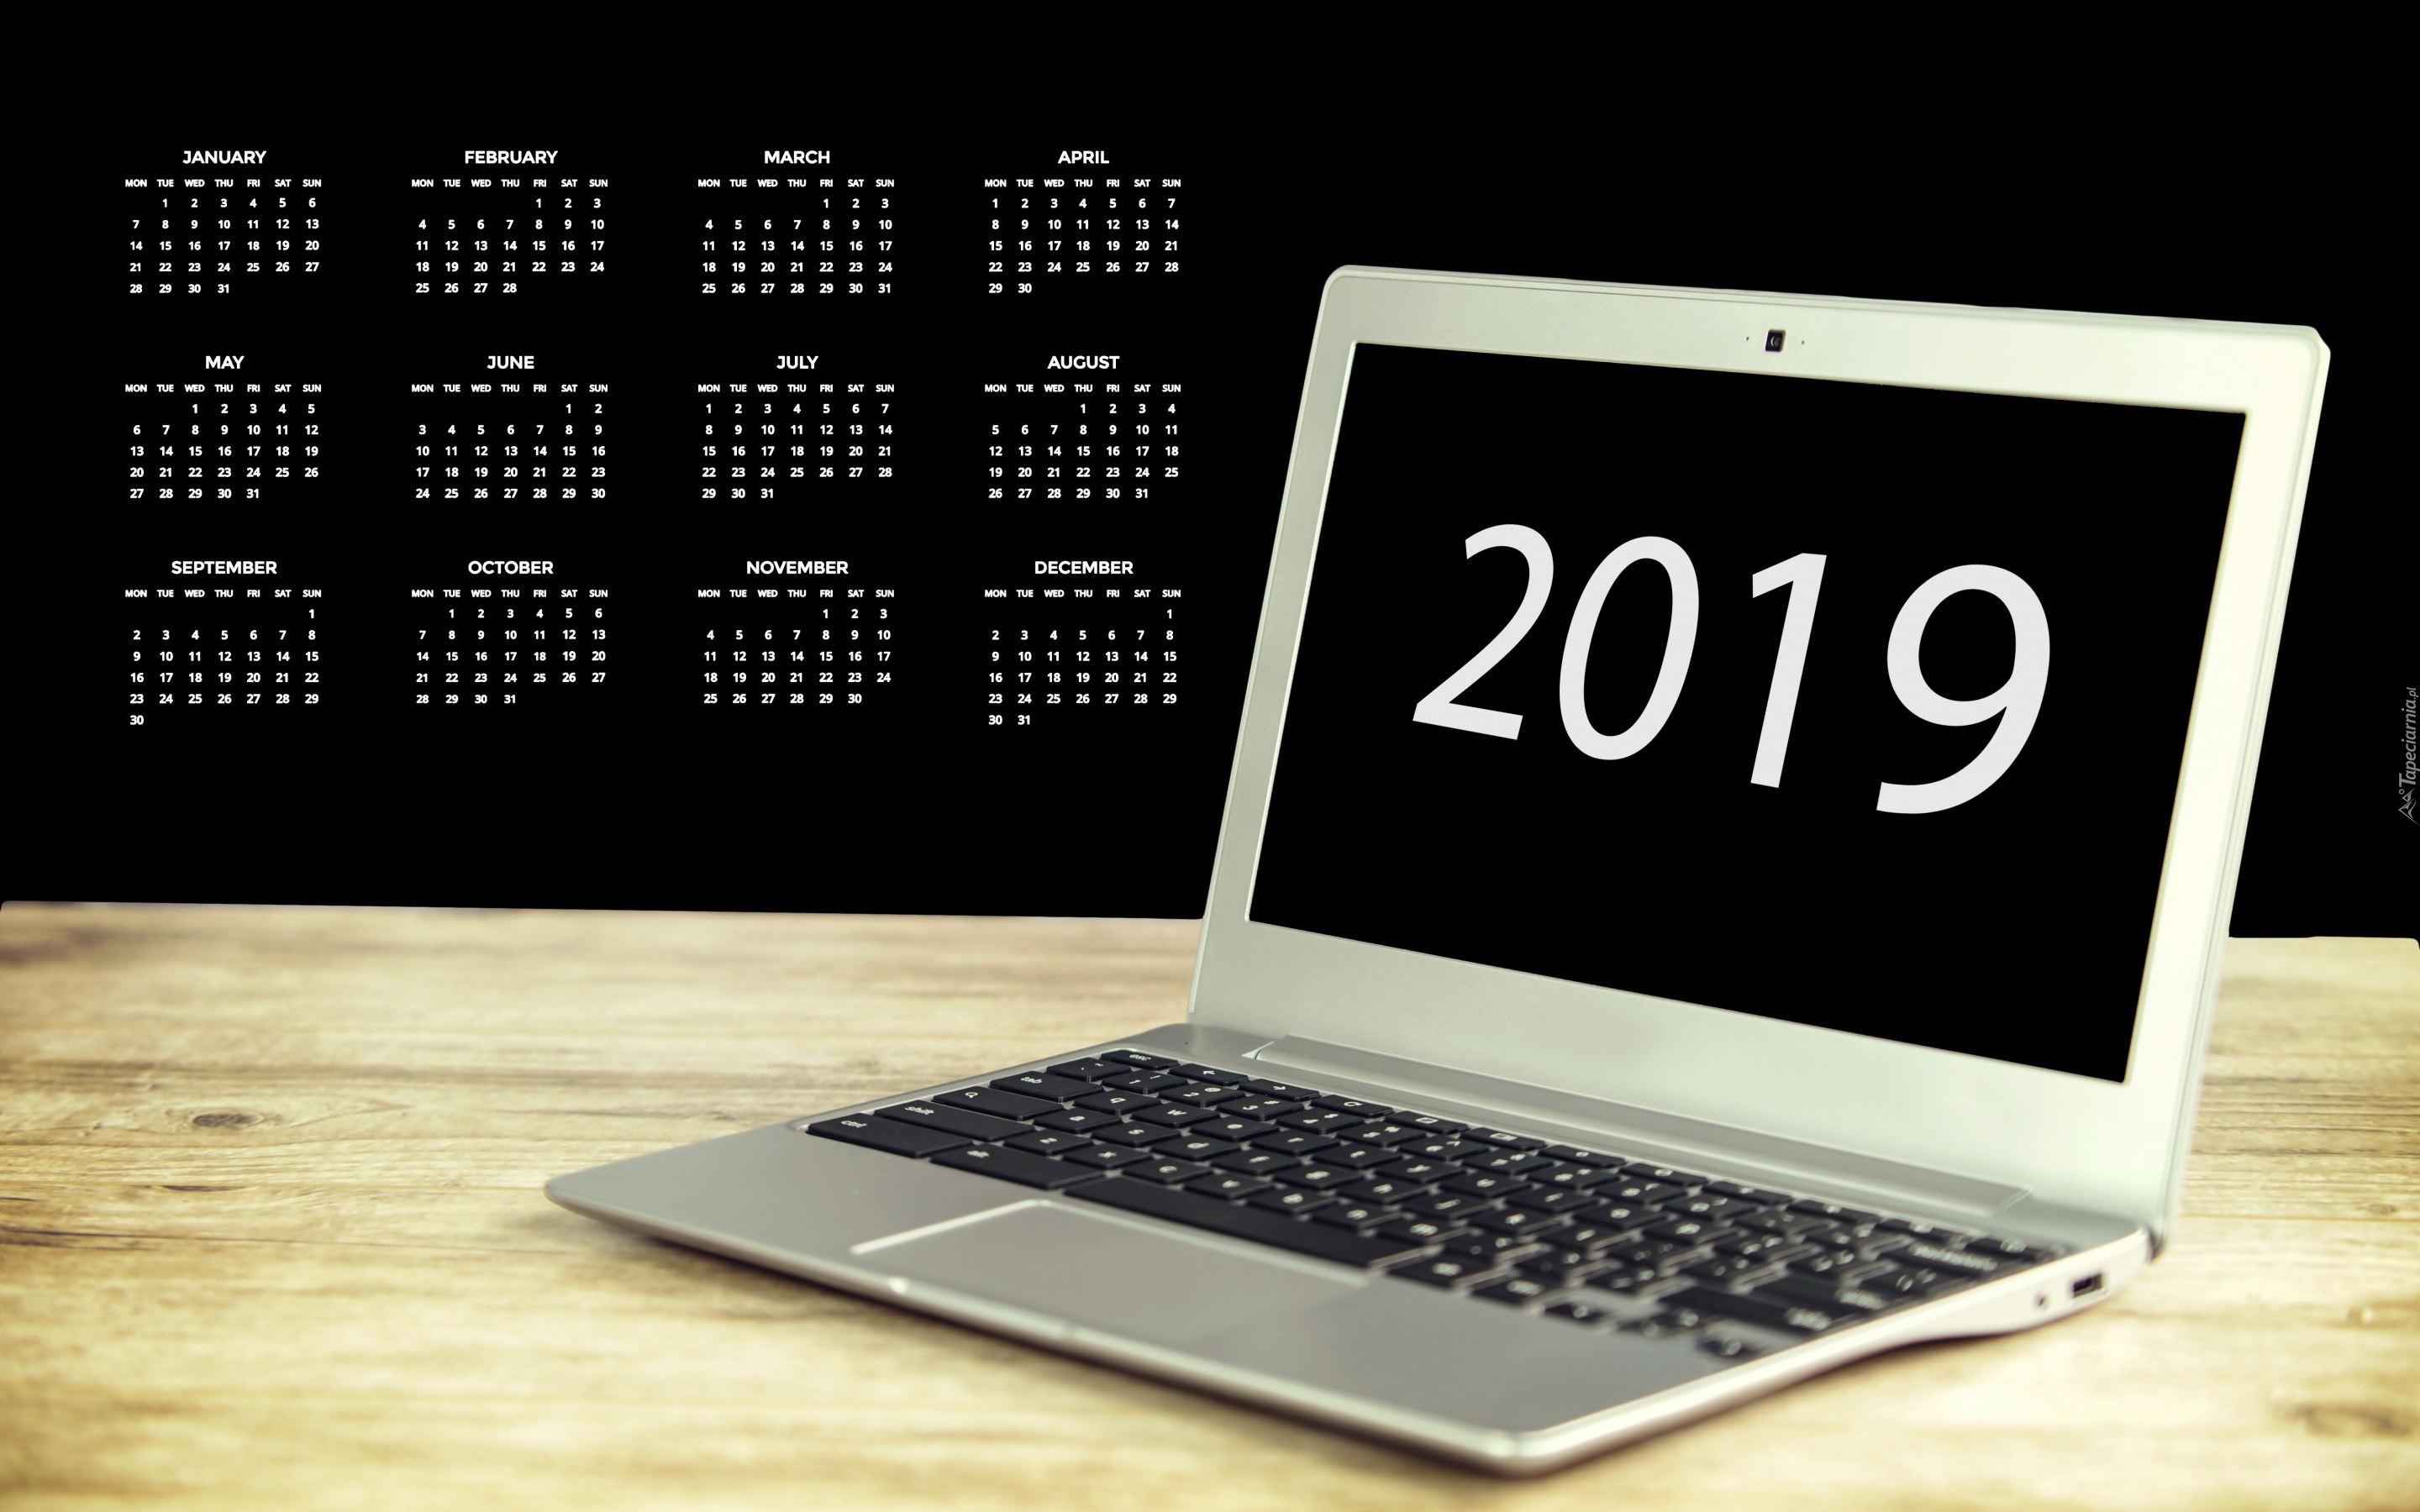 Kalendarz, 2019, Laptop